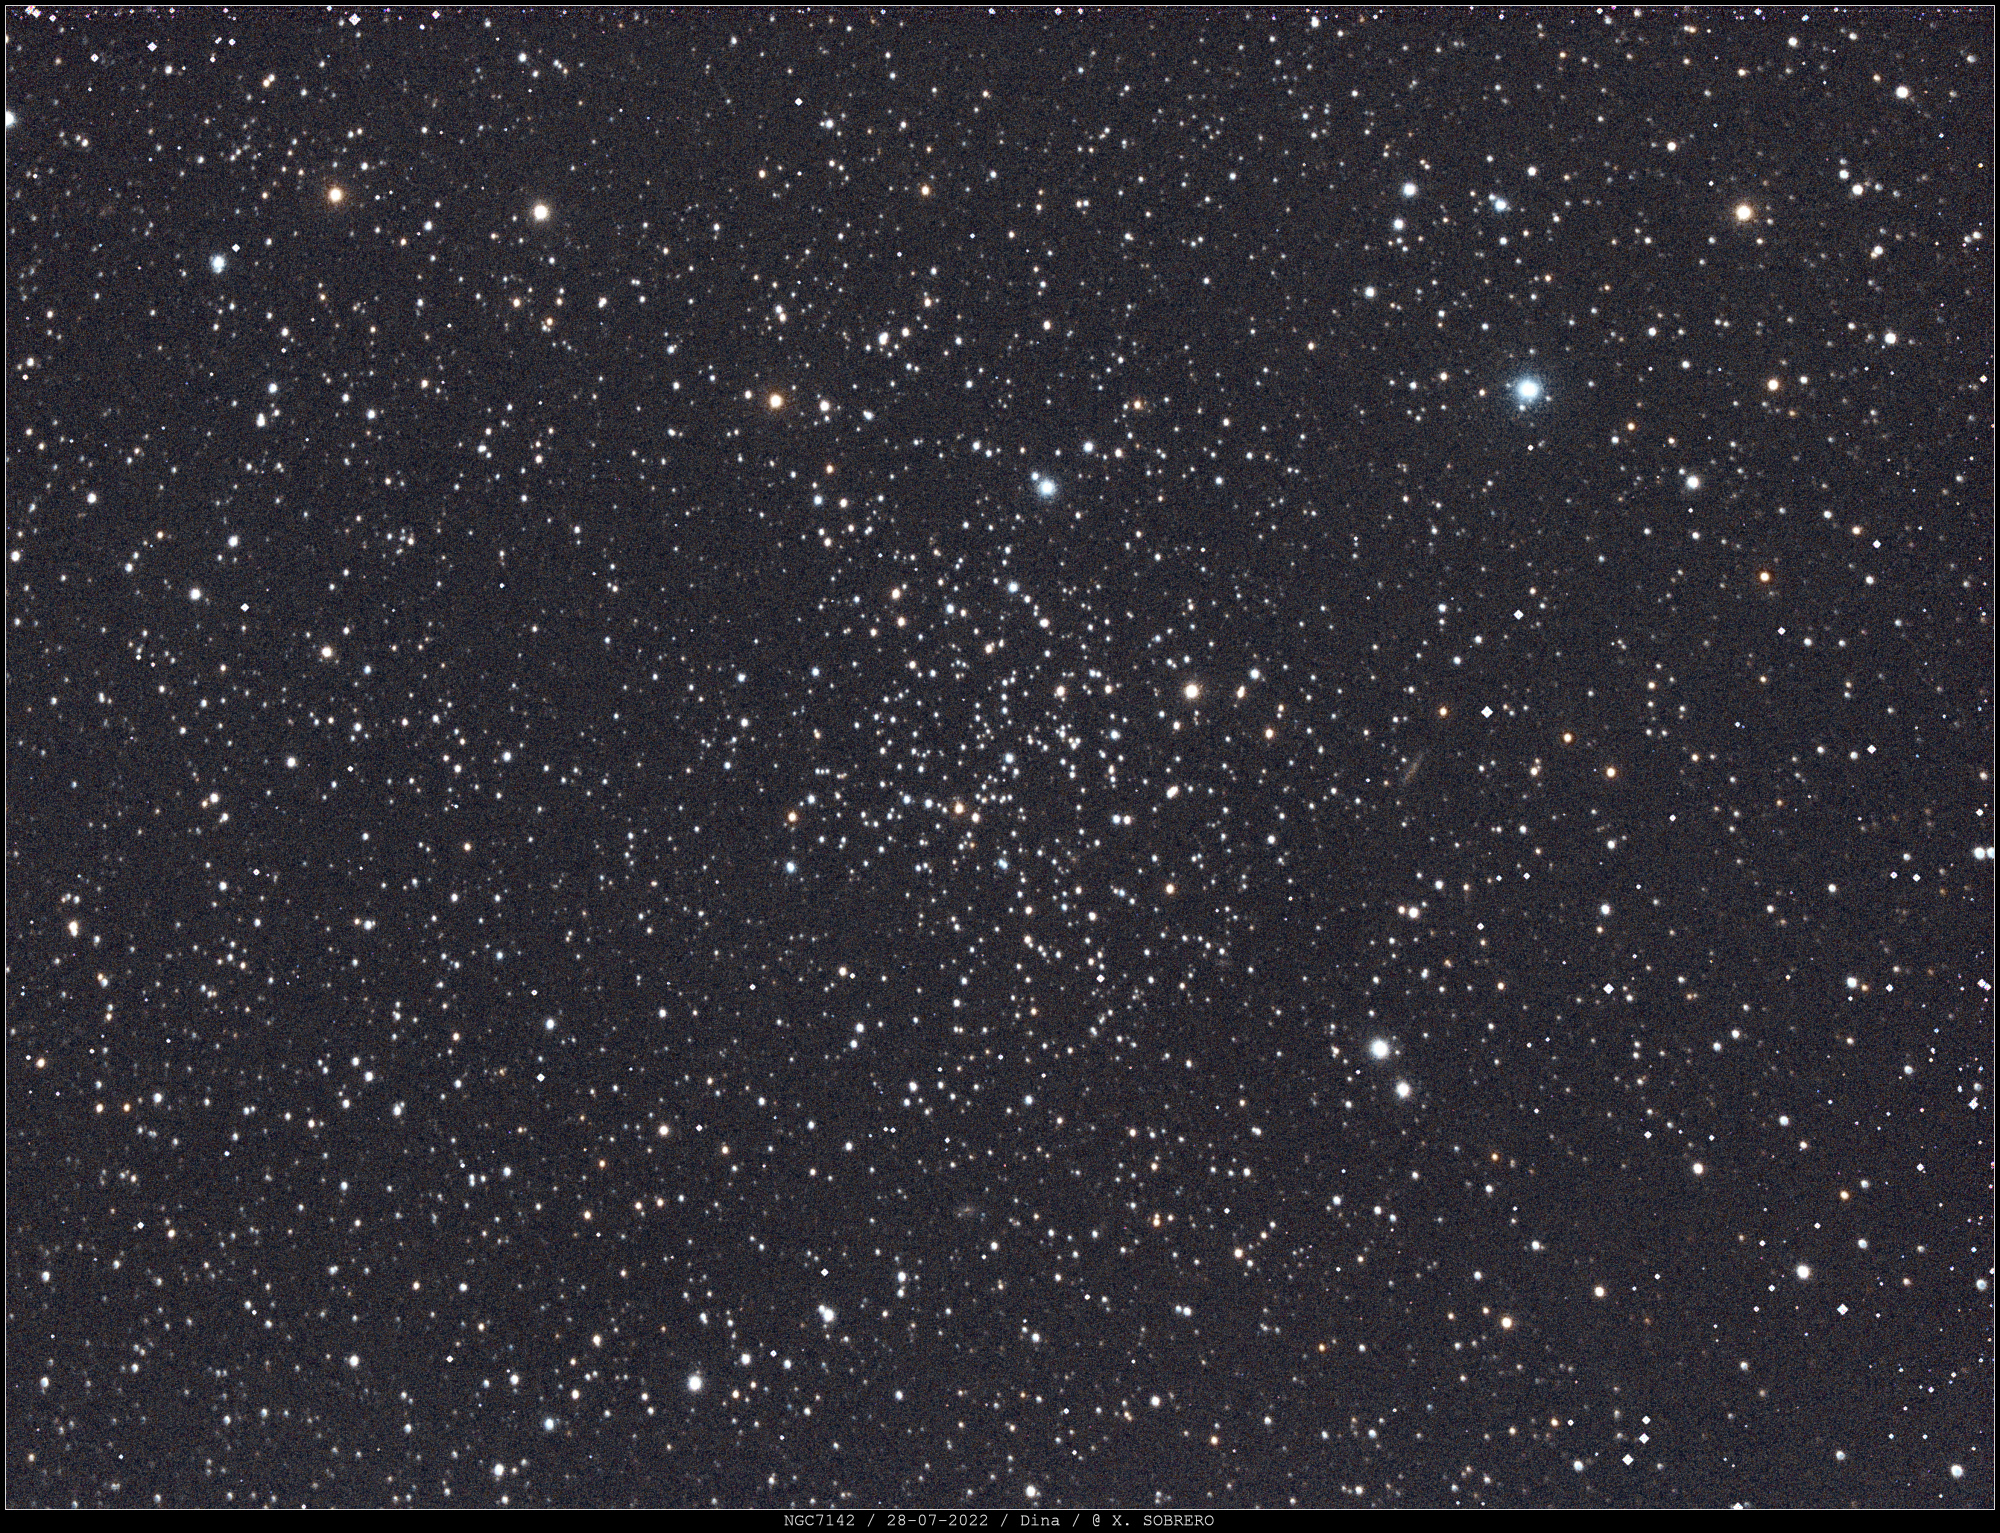 02_-_NGC7142_2022-07-28_SIRIL_GIMP_signee.thumb.jpg.9197f1e4004b4e2b0617c1de92bb708f.jpg